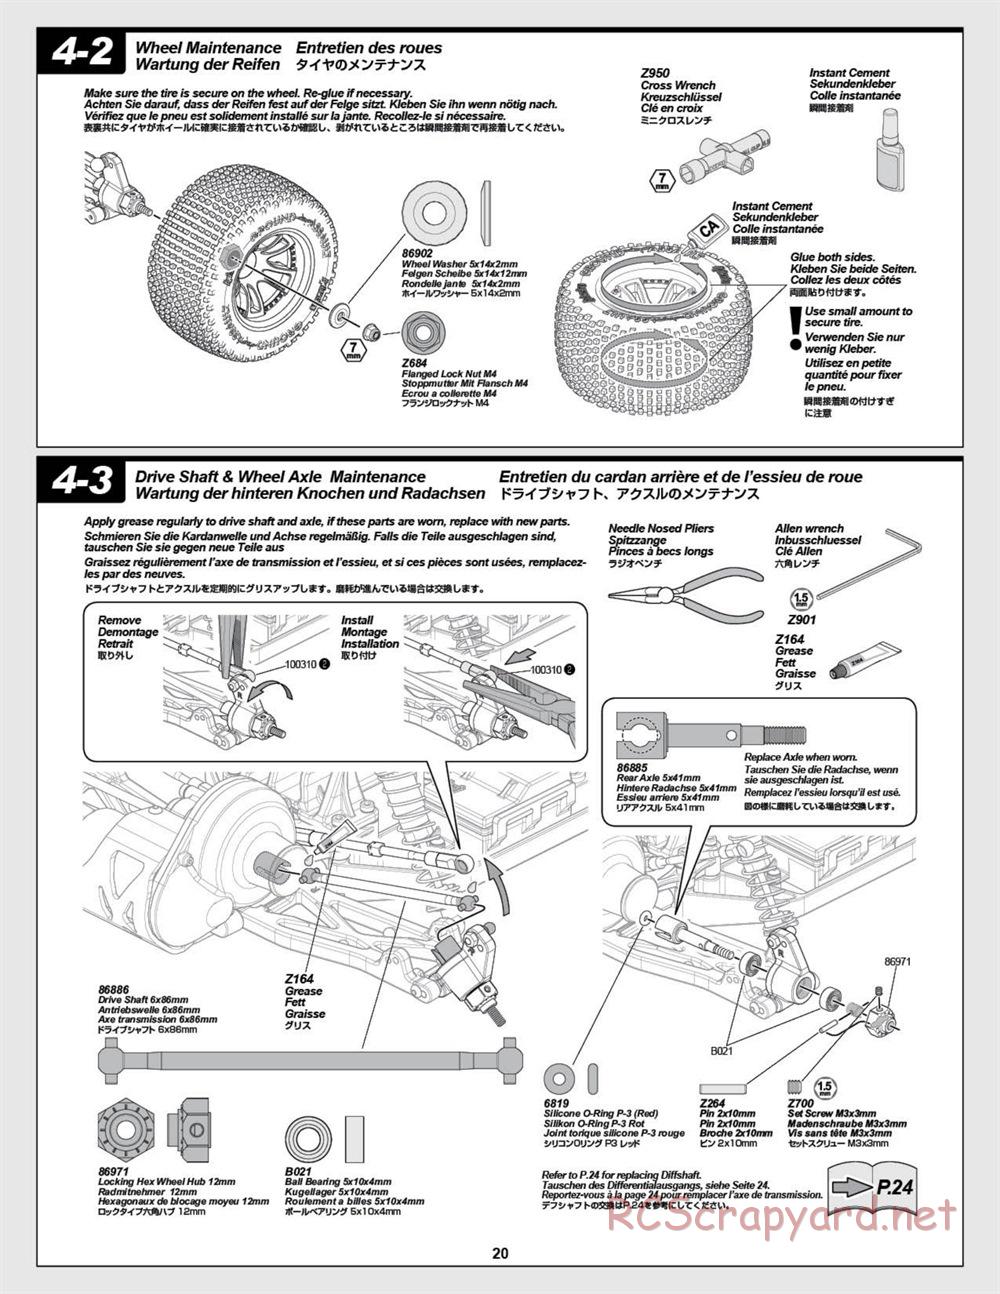 HPI - E-Firestorm-10T - Manual - Page 20